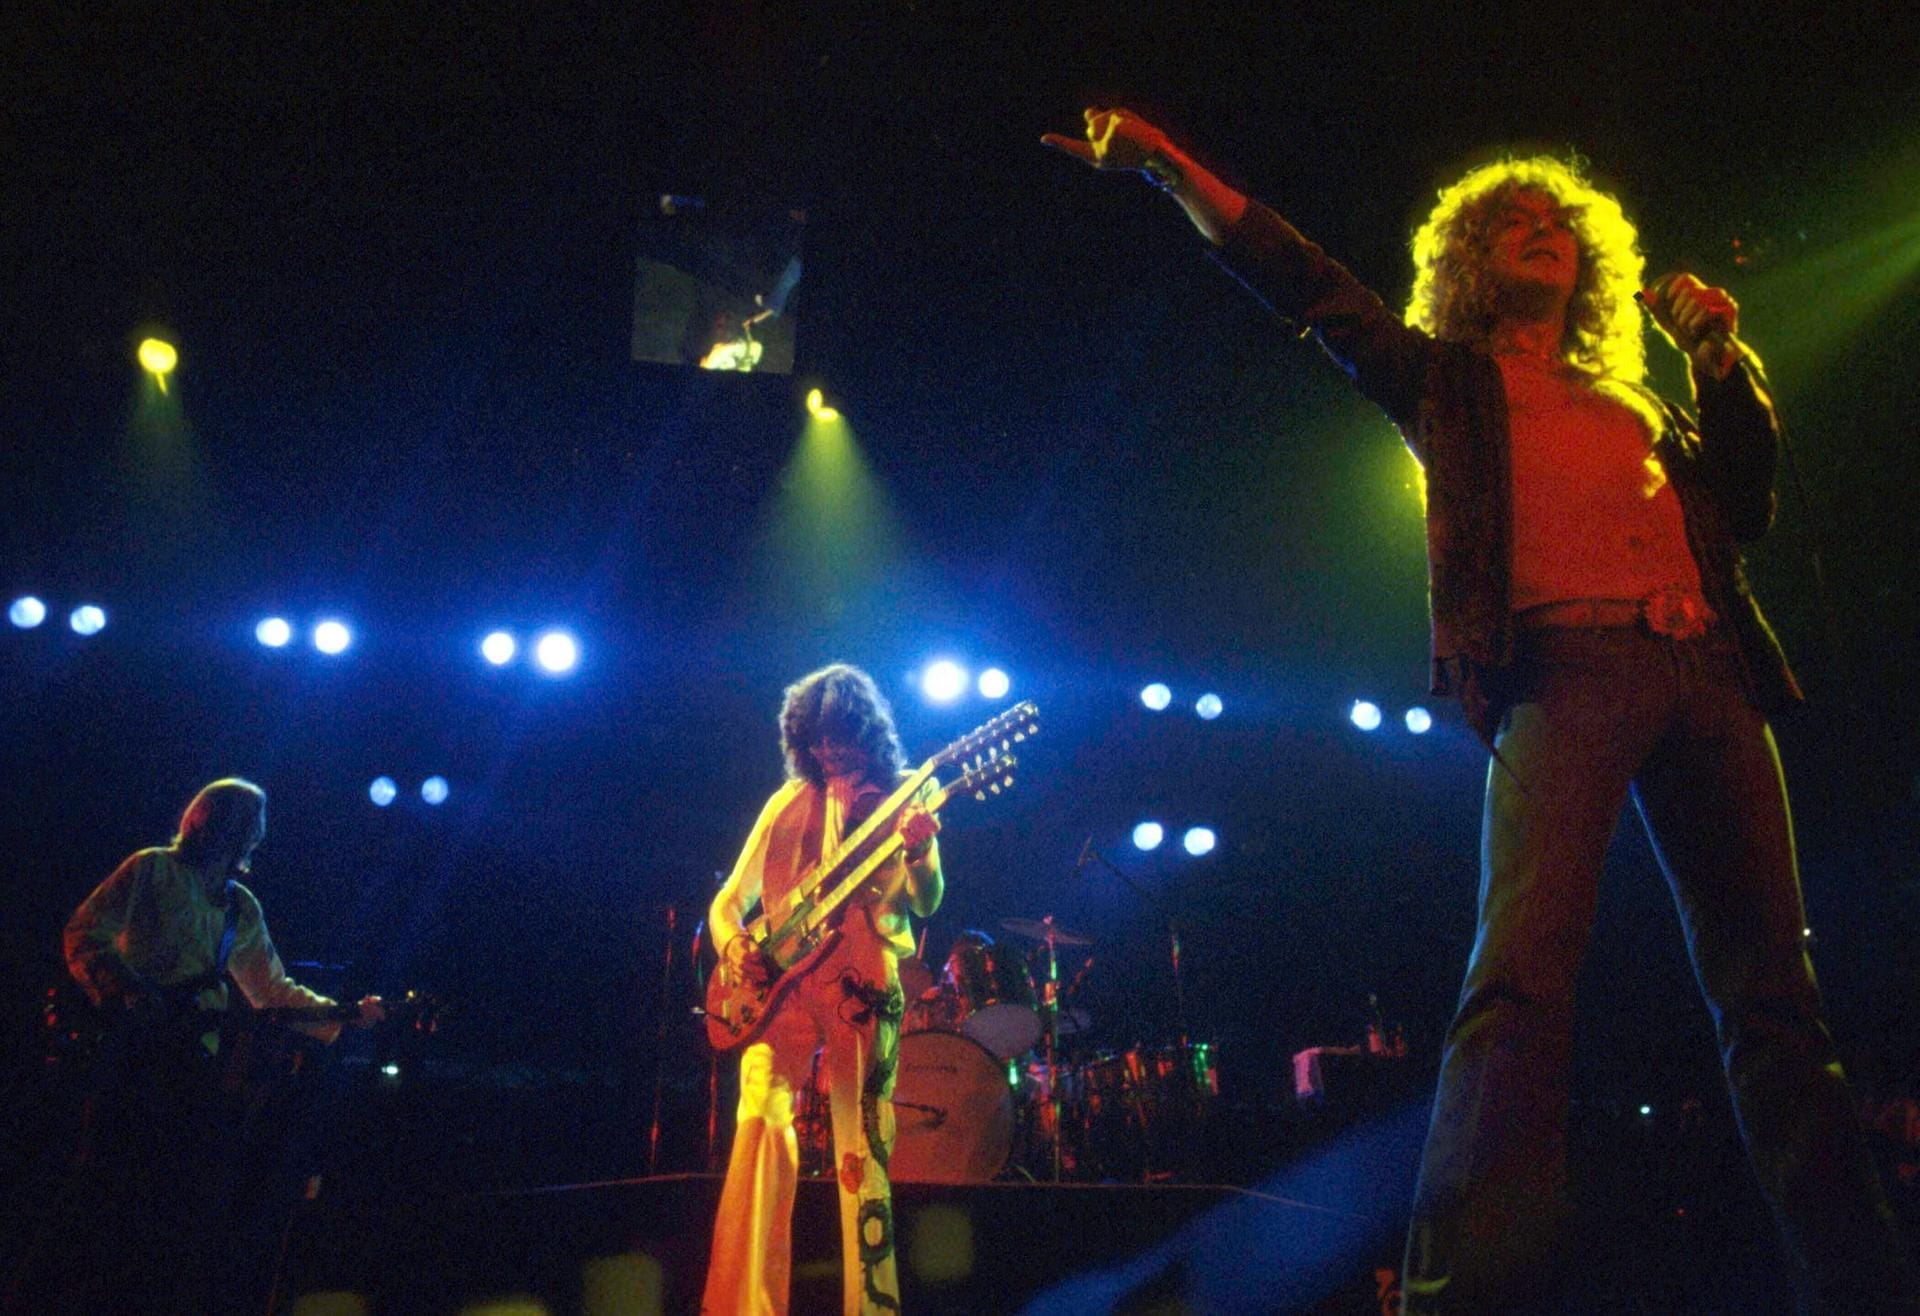 Led Zeppelin bei "Stairway to Heaven" in 1978: Wenige Jahre später wurde das Aus der Rockband verkündet.